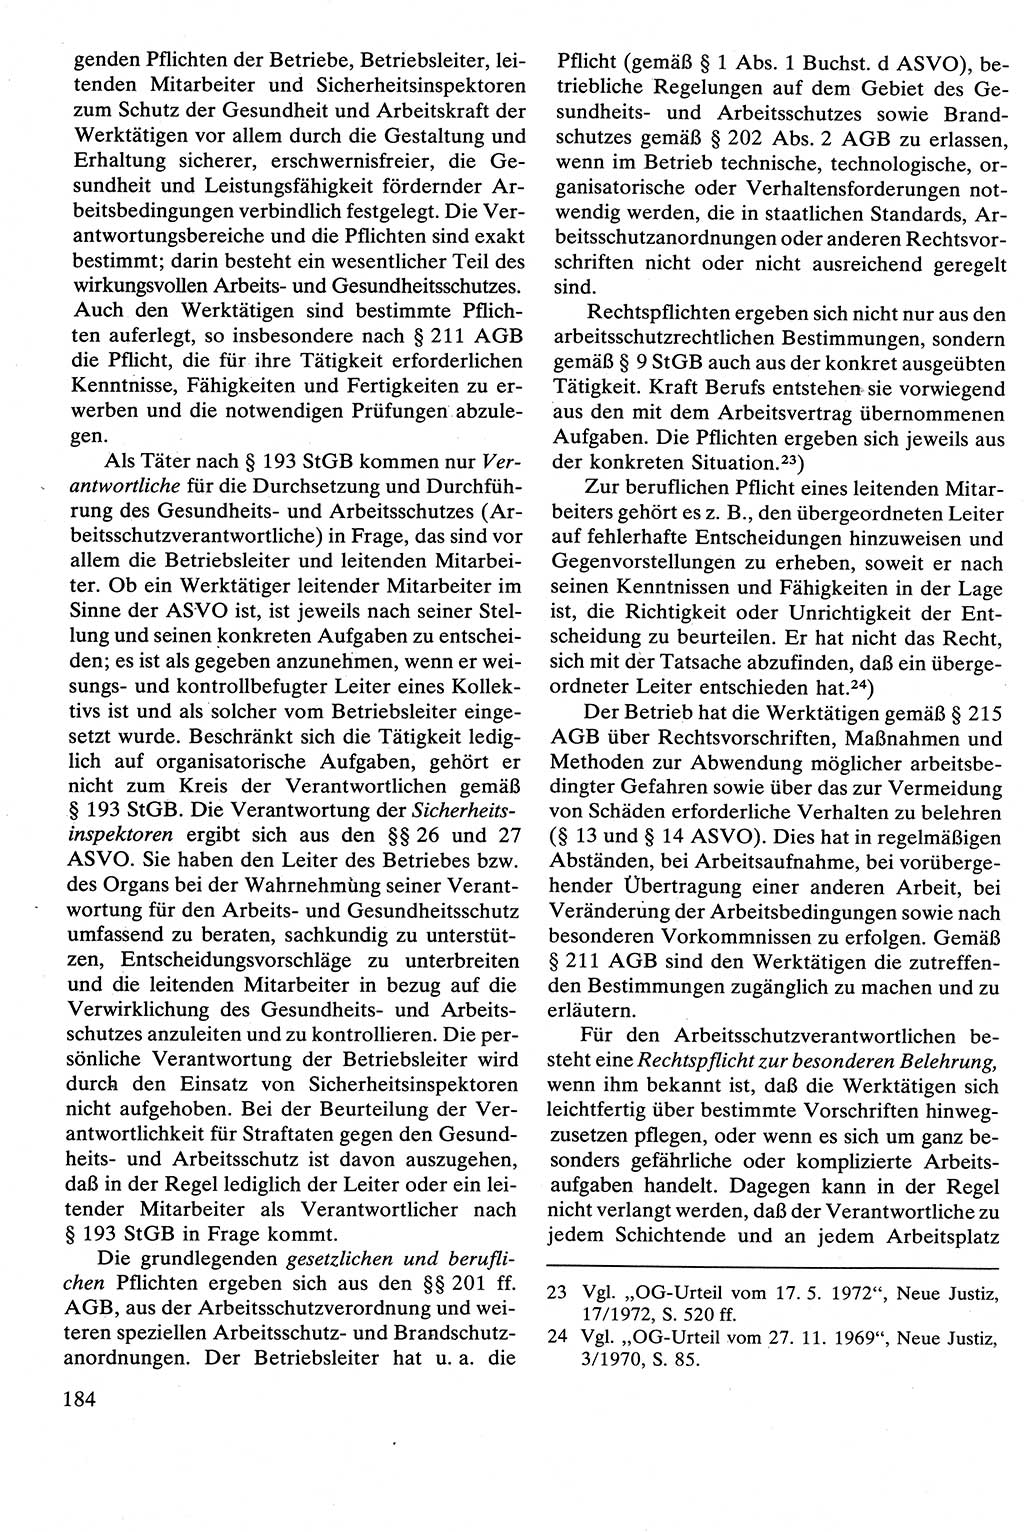 Strafrecht [Deutsche Demokratische Republik (DDR)], Besonderer Teil, Lehrbuch 1981, Seite 184 (Strafr. DDR BT Lb. 1981, S. 184)